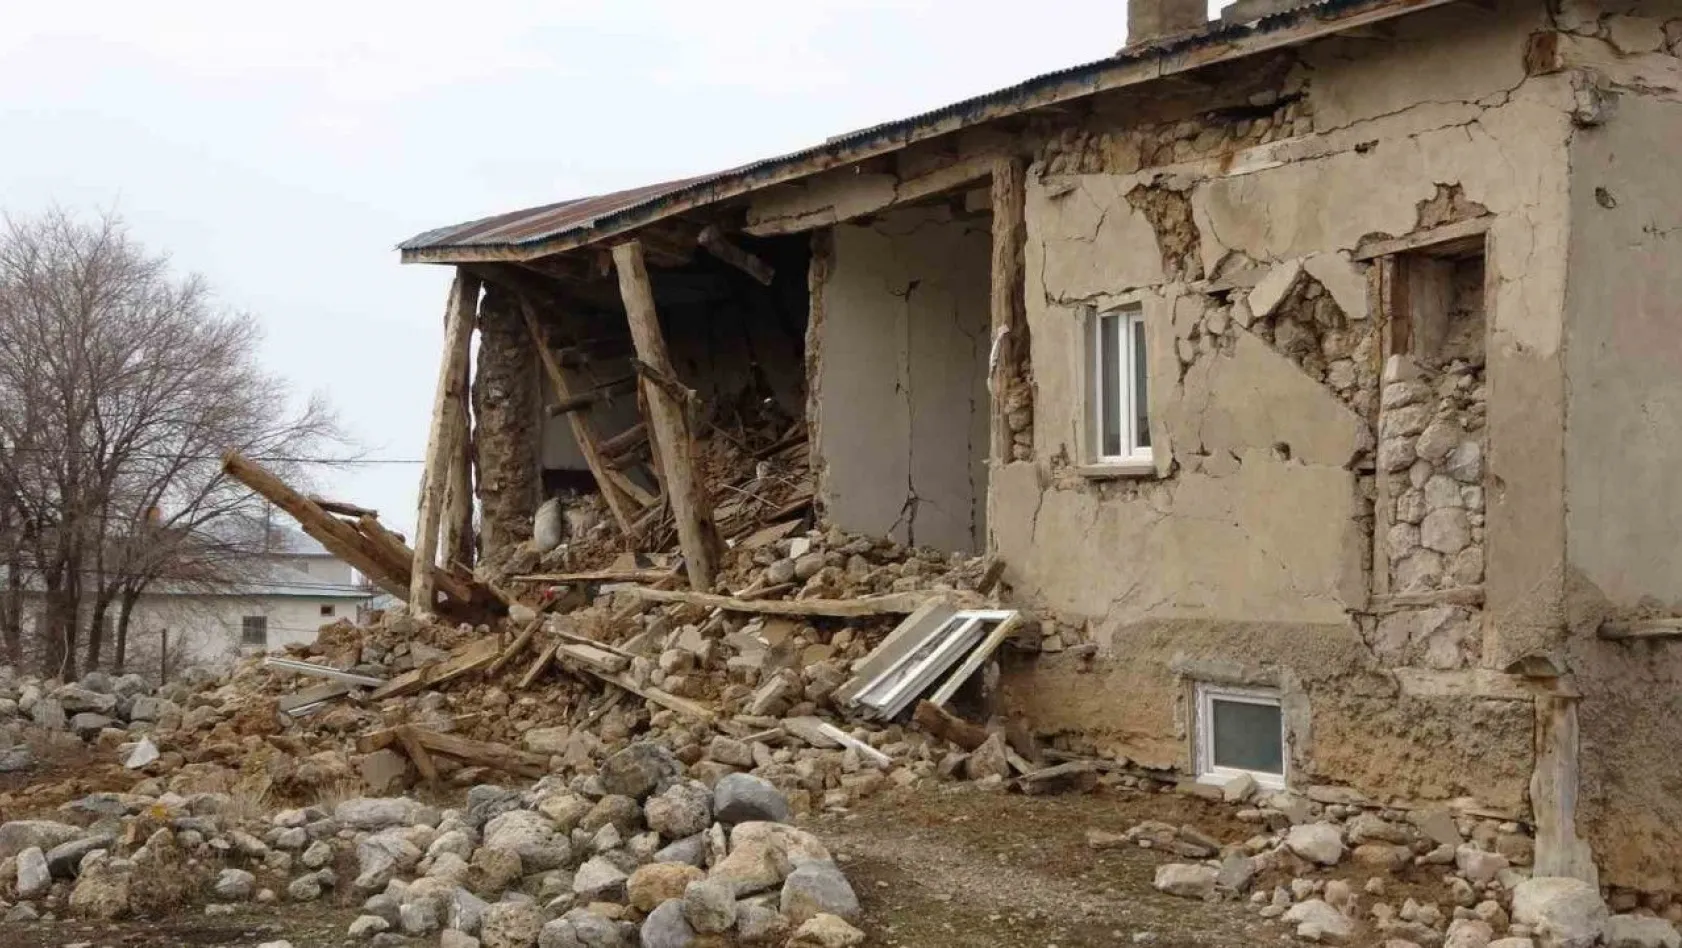 Sarız'da hasar tablosu gün geçtikçe ortaya çıkıyor